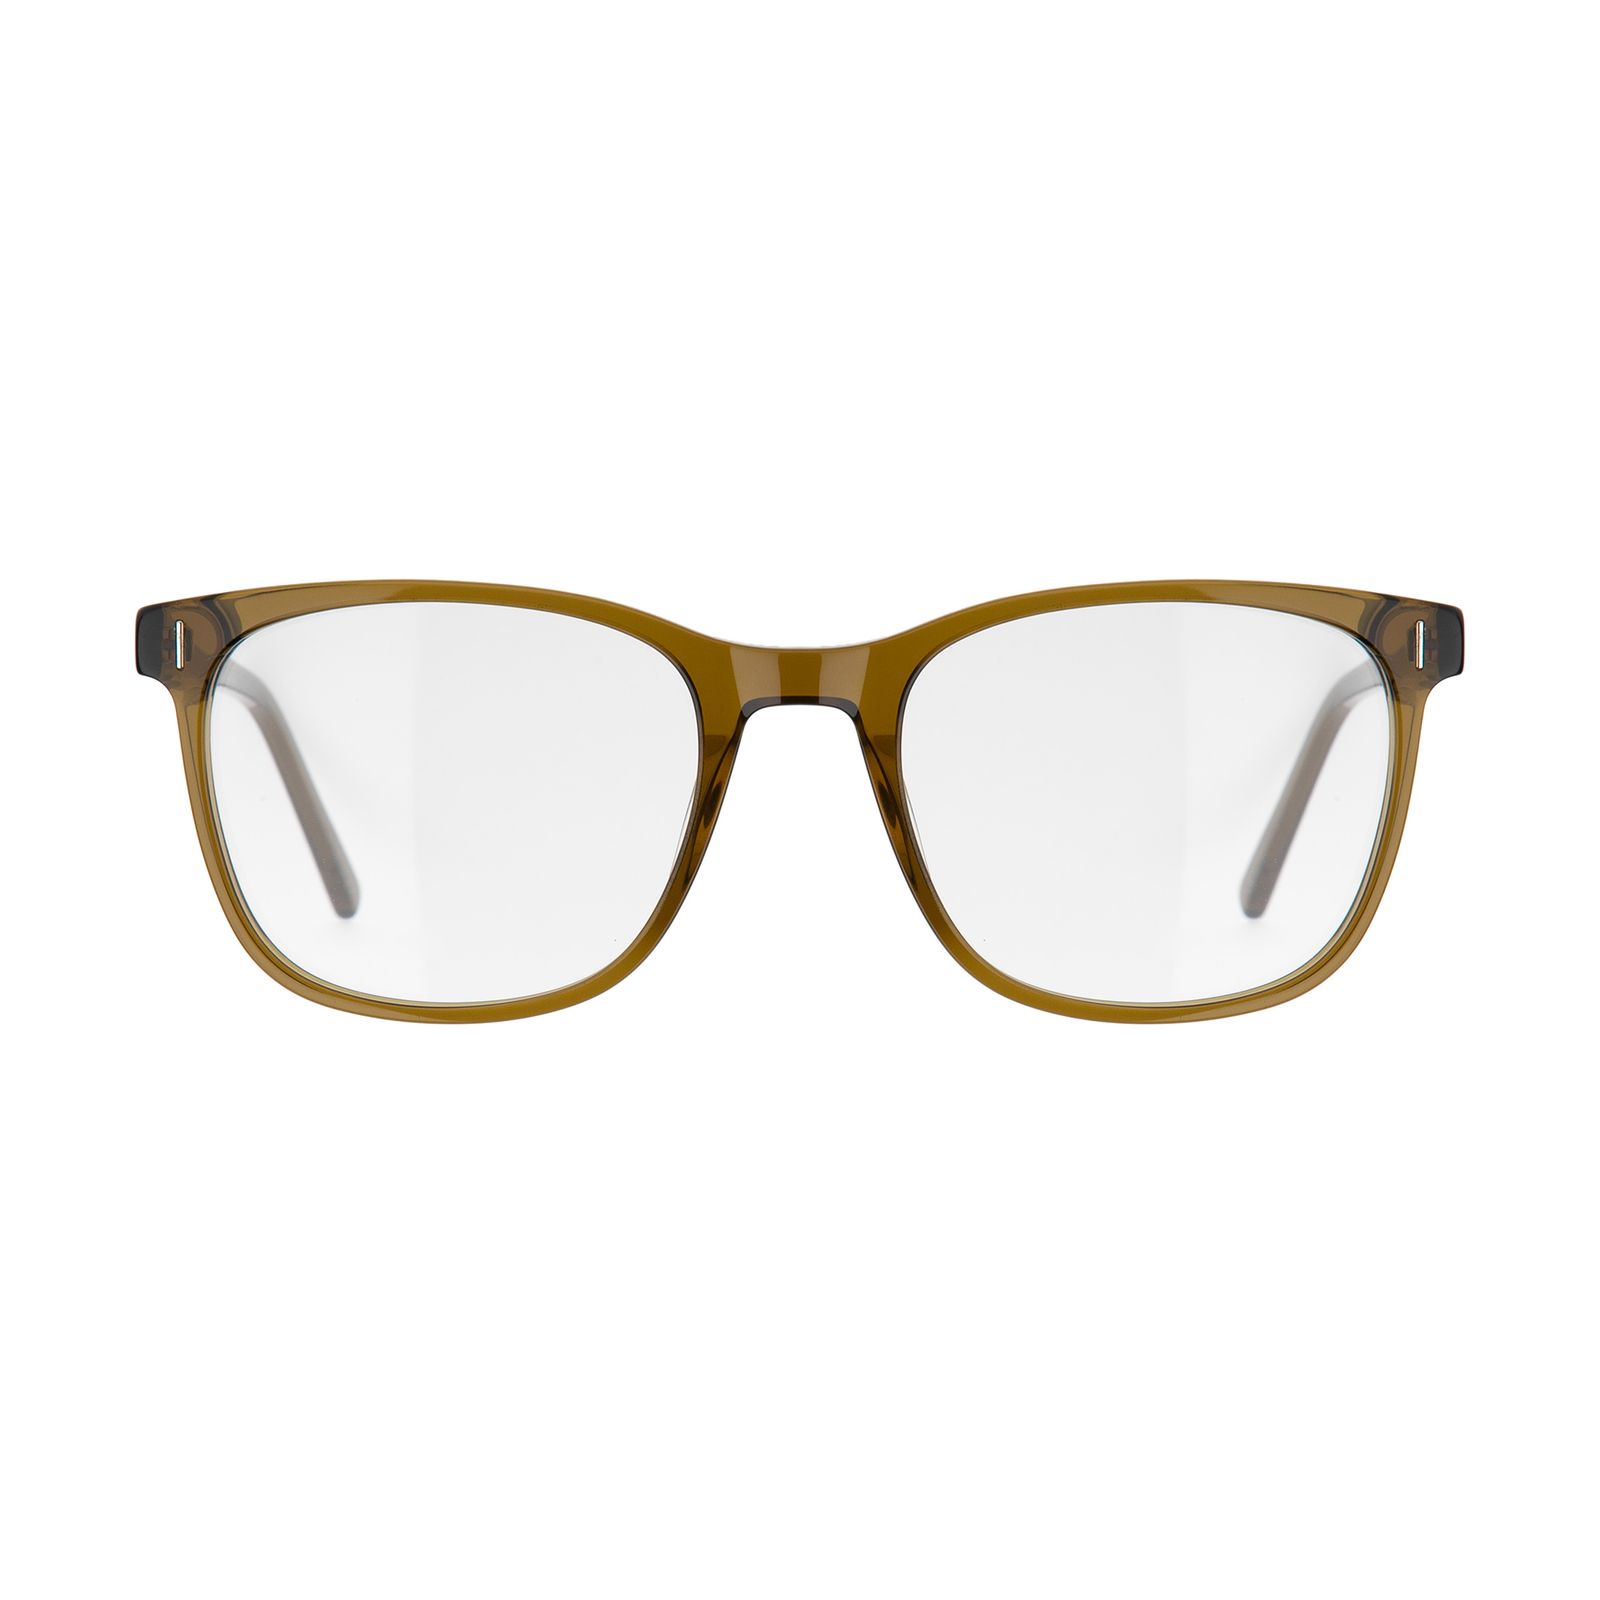 فریم عینک طبی ماسائو مدل 13192-117